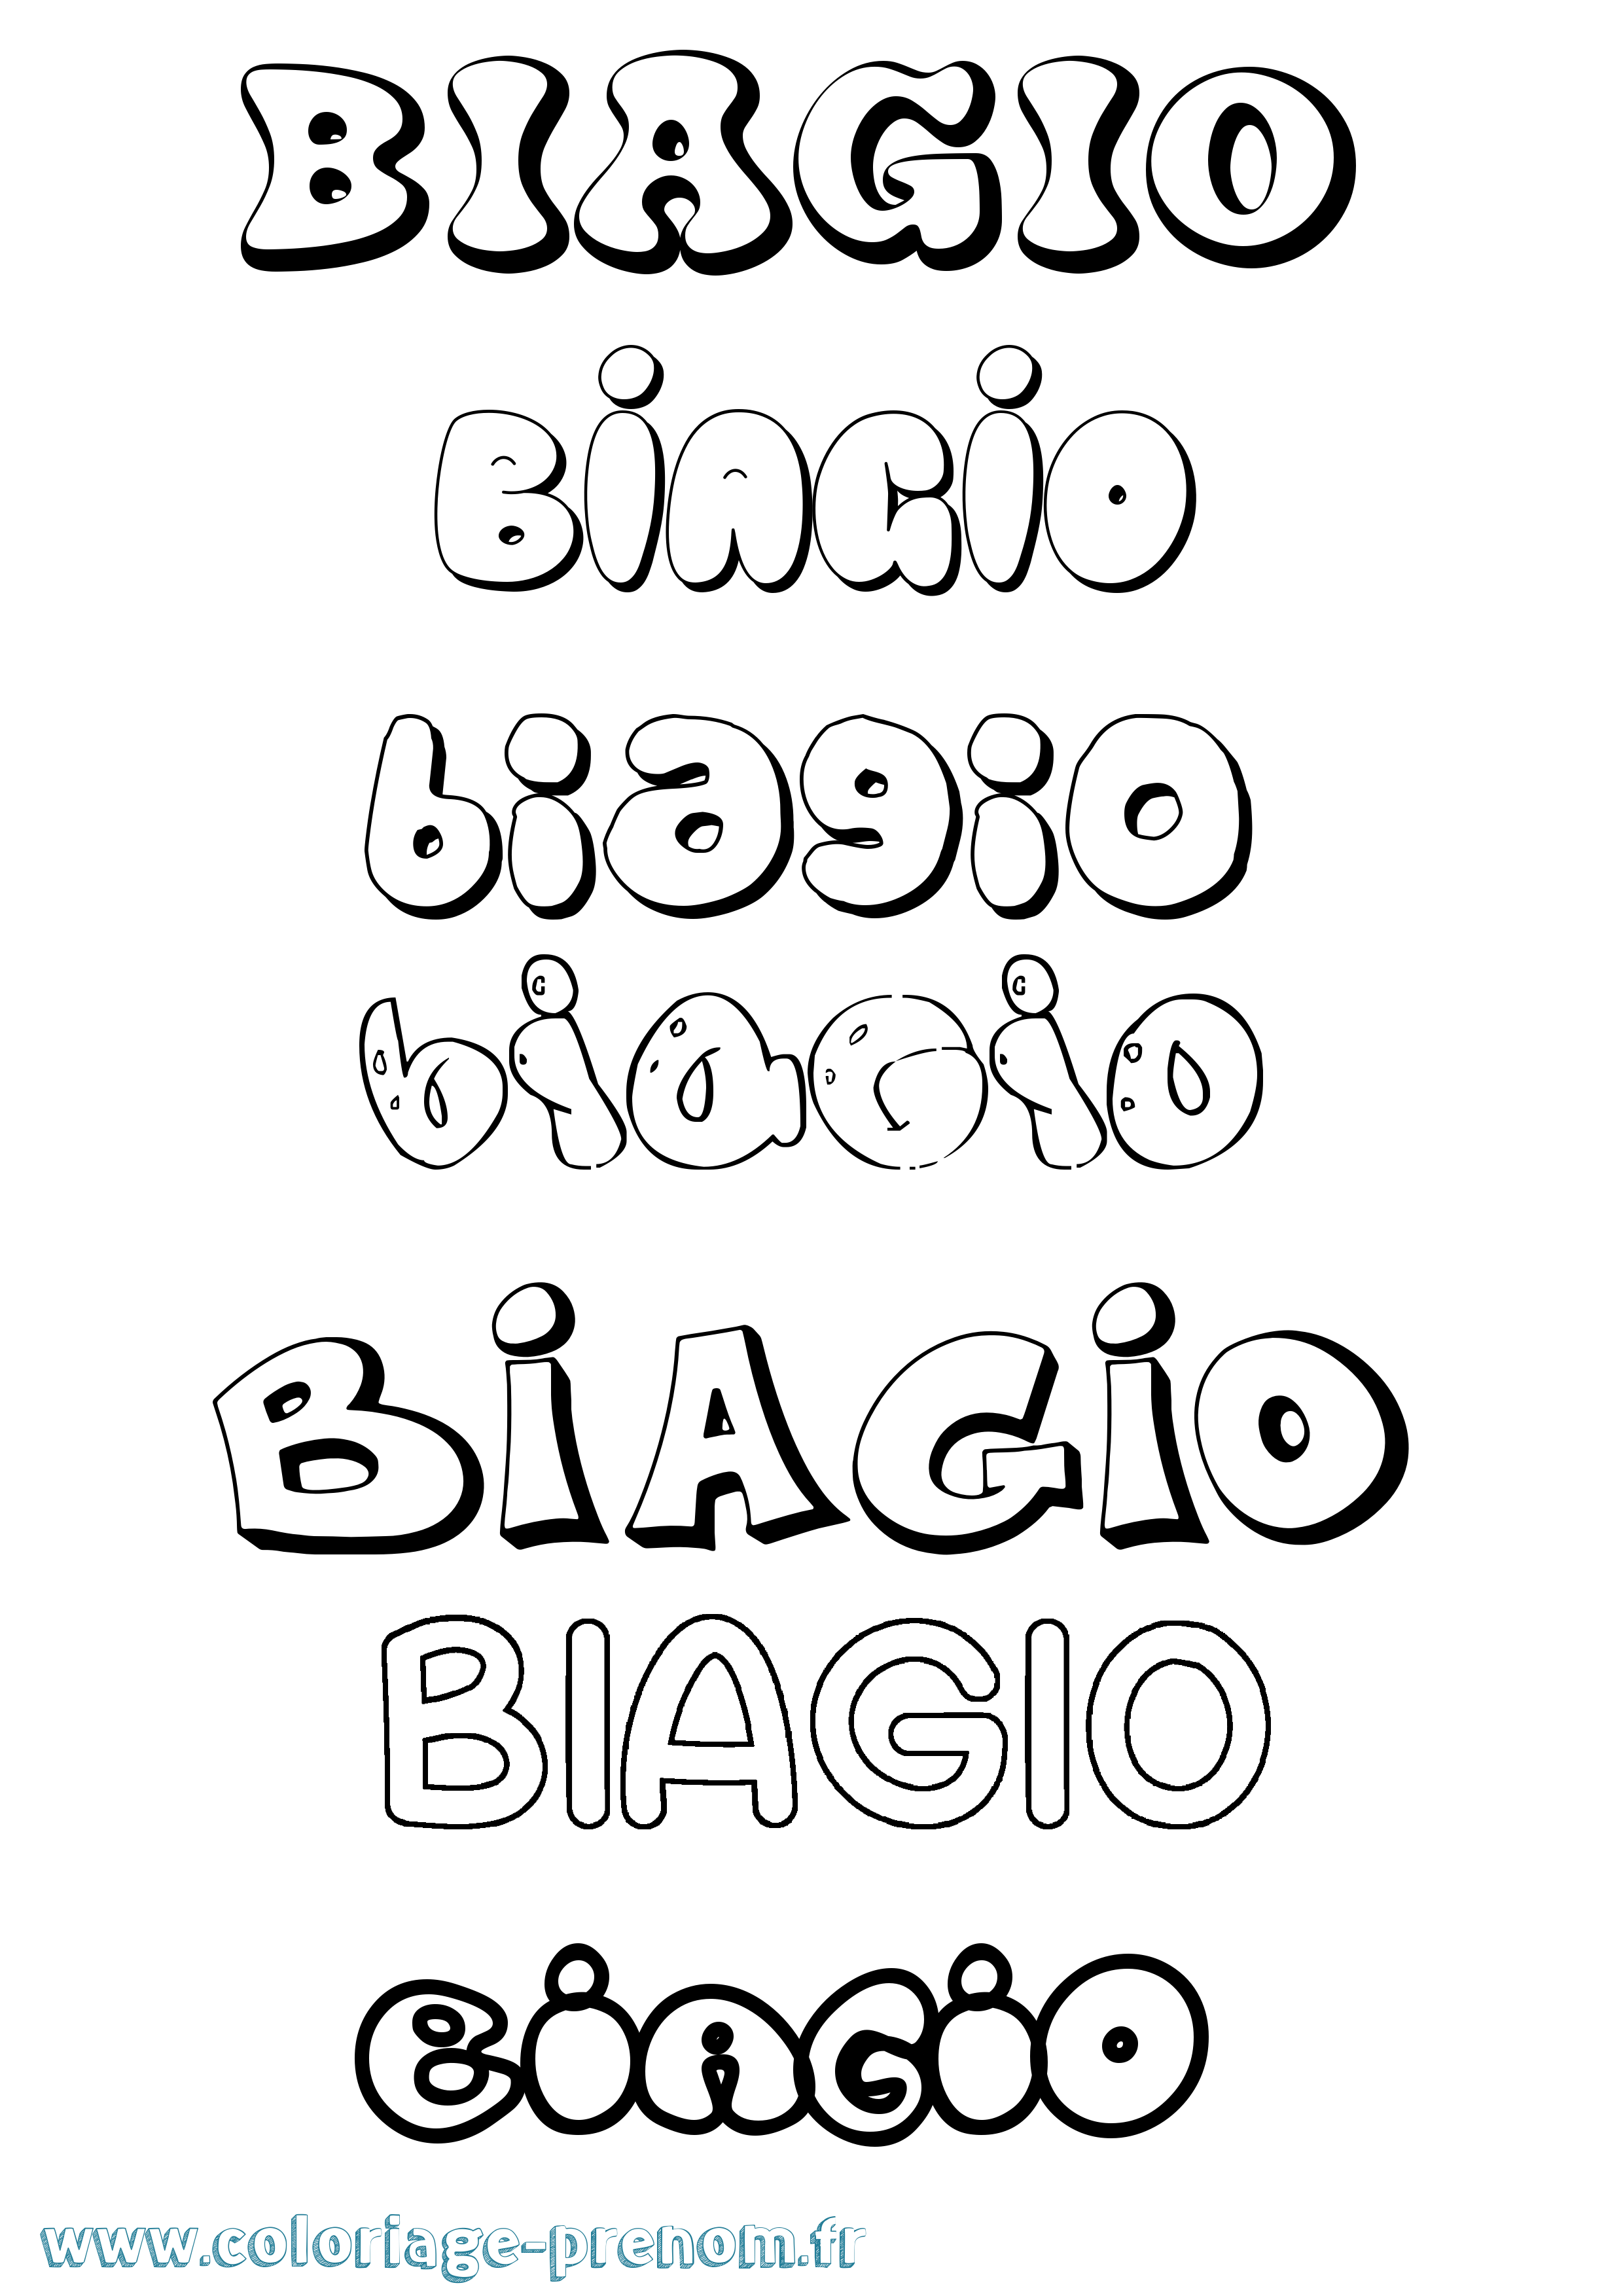 Coloriage prénom Biagio Bubble